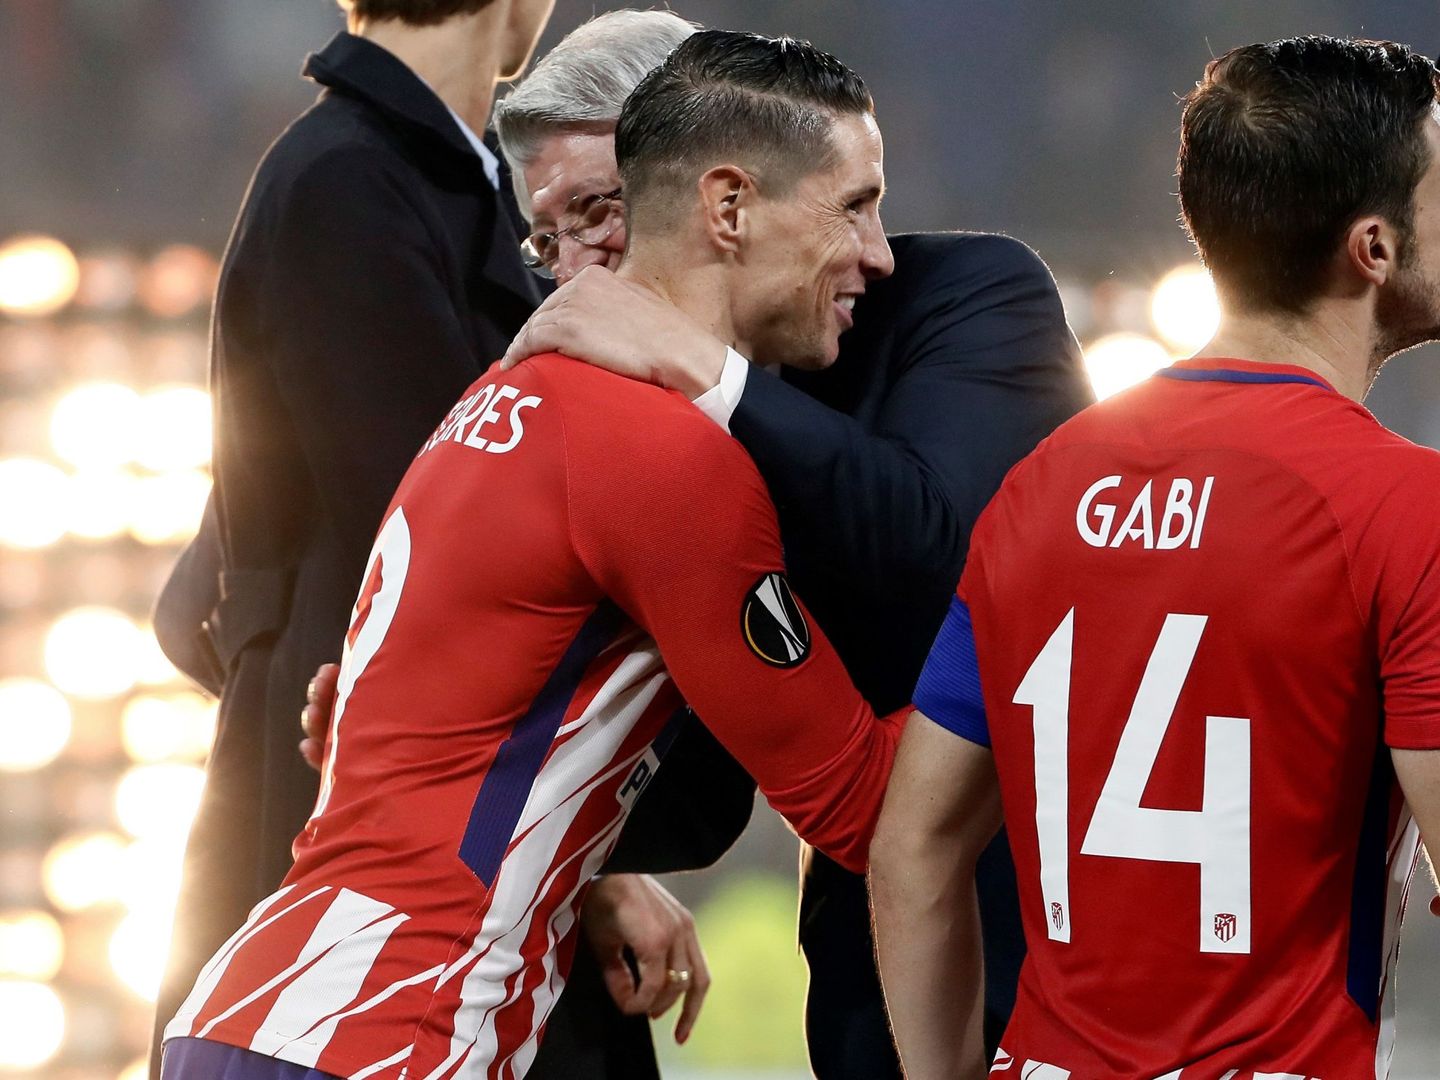 Torres se abraza con Enrique Cerezo, junto a Gabi, antes de recoger la copa. (EFE)